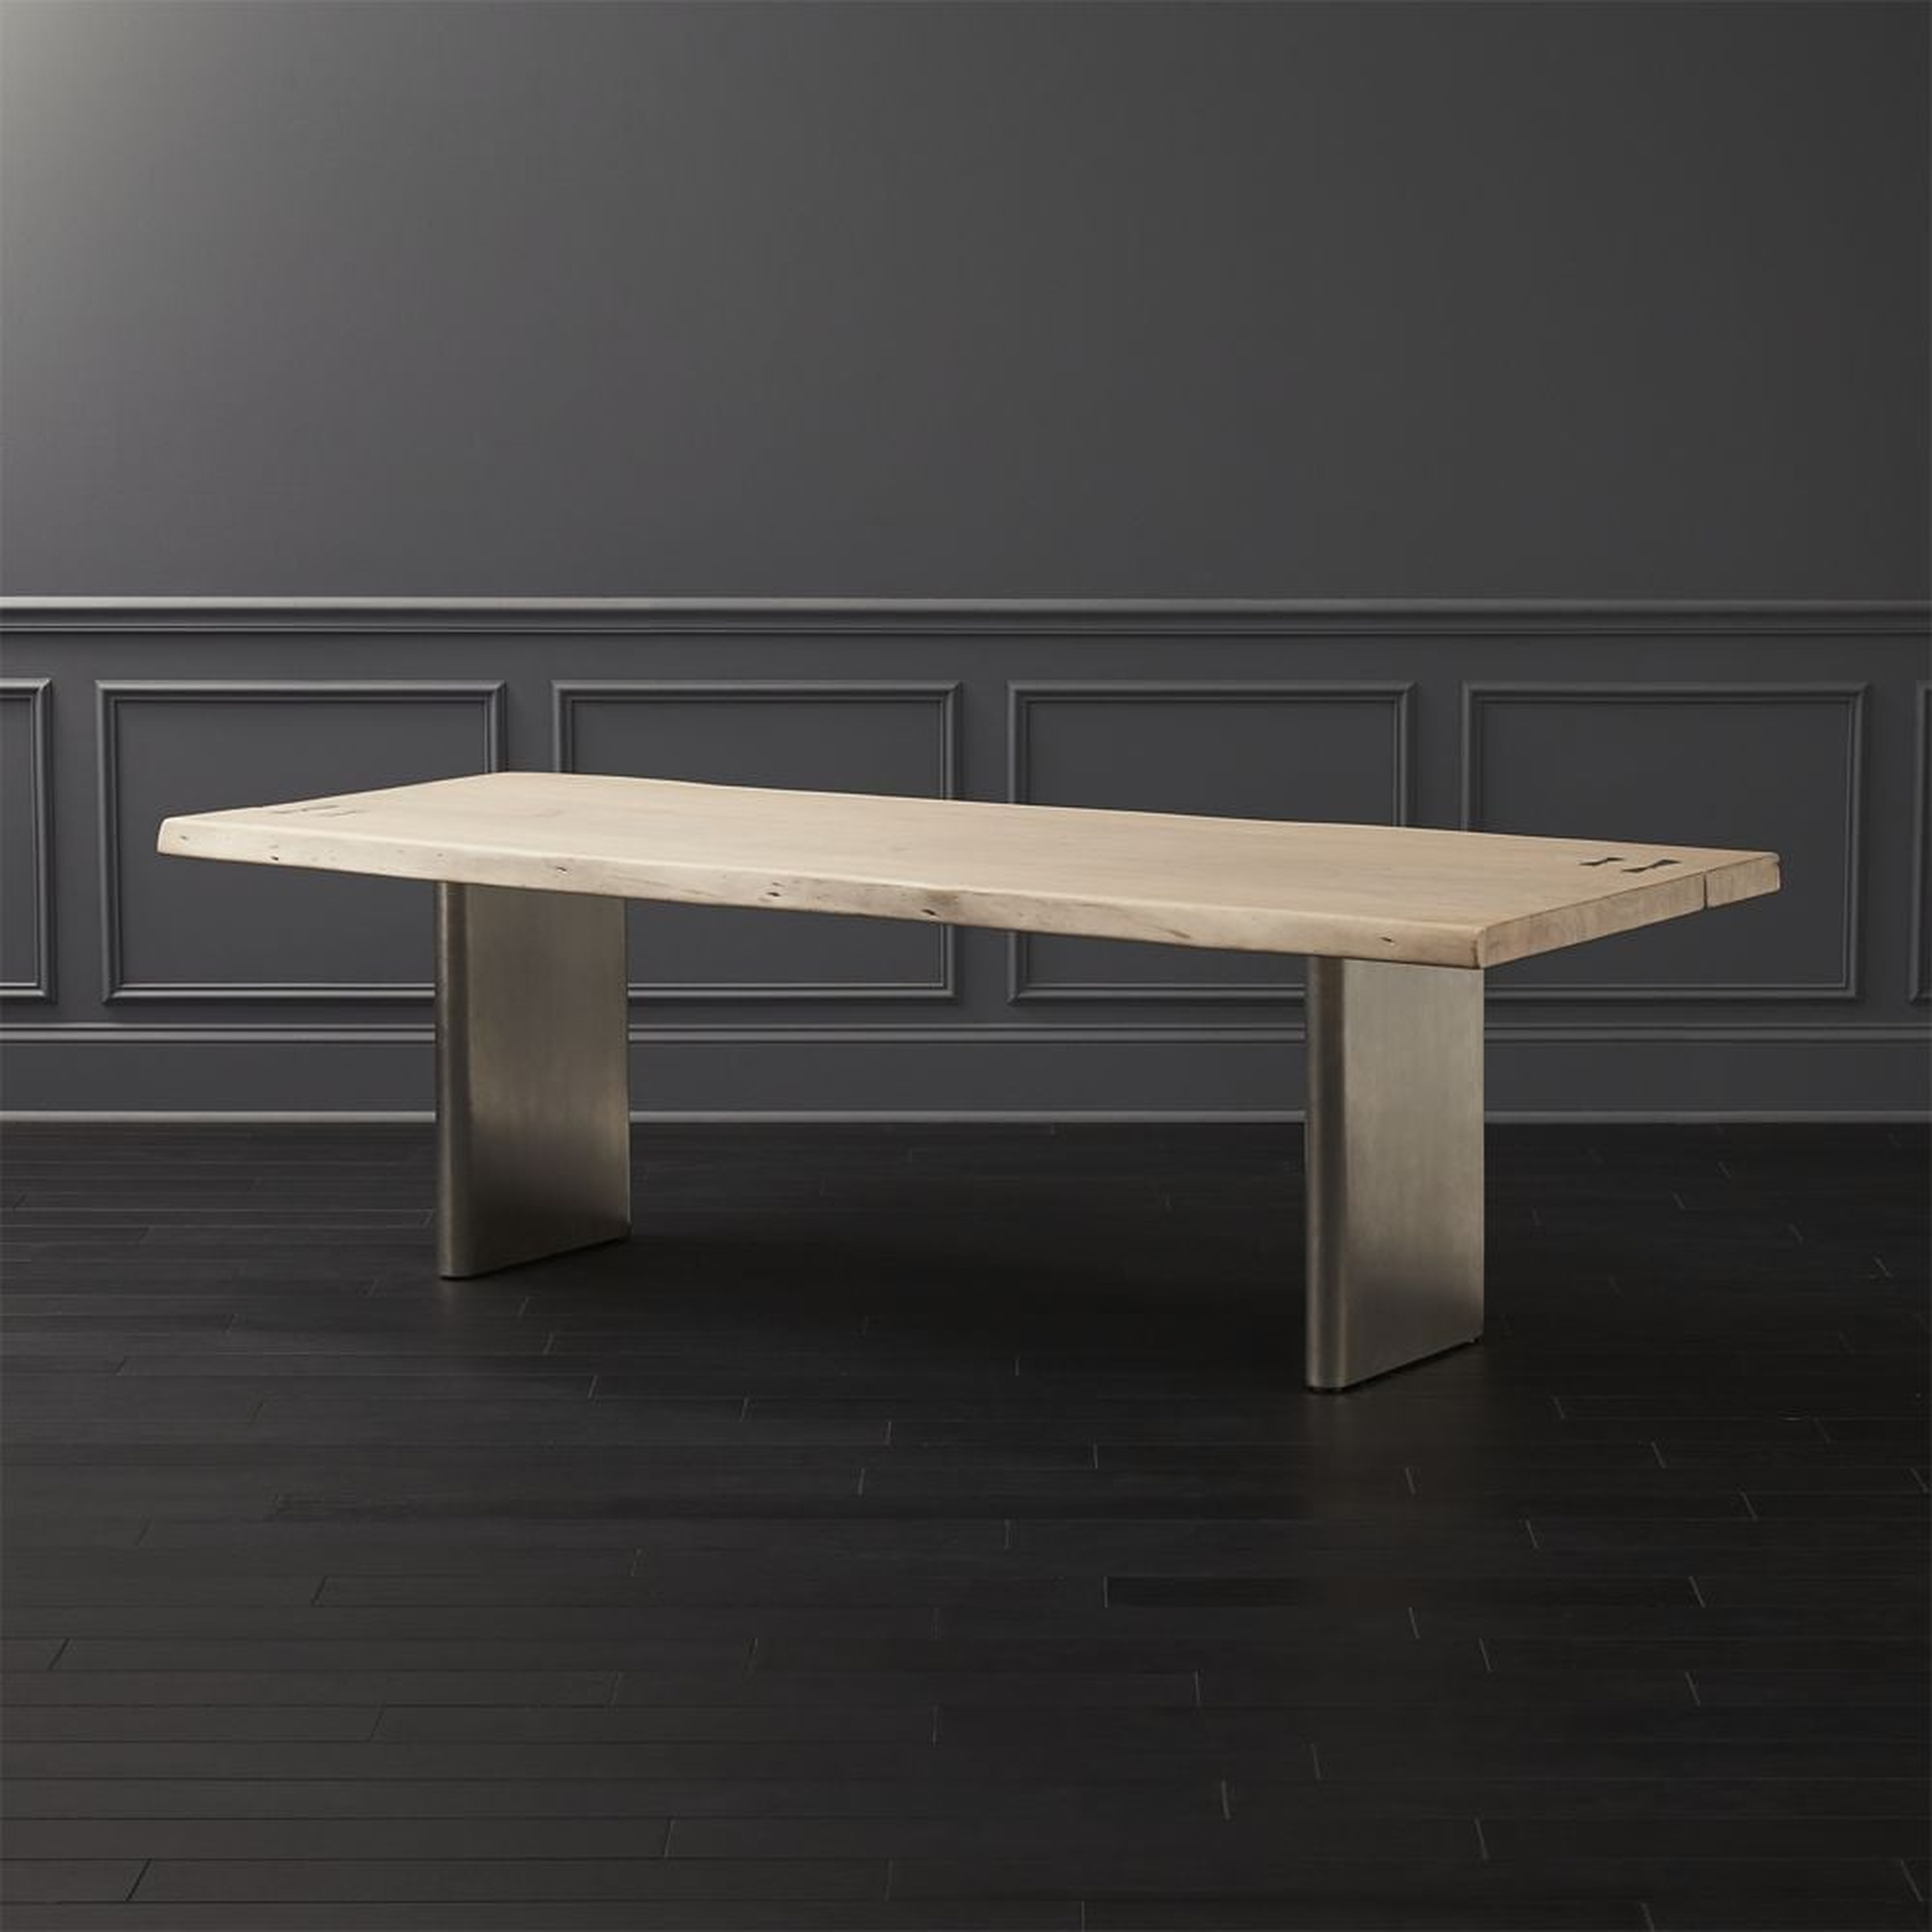 Landscape Rectangular White Washed Wood Dining Table 95" - CB2